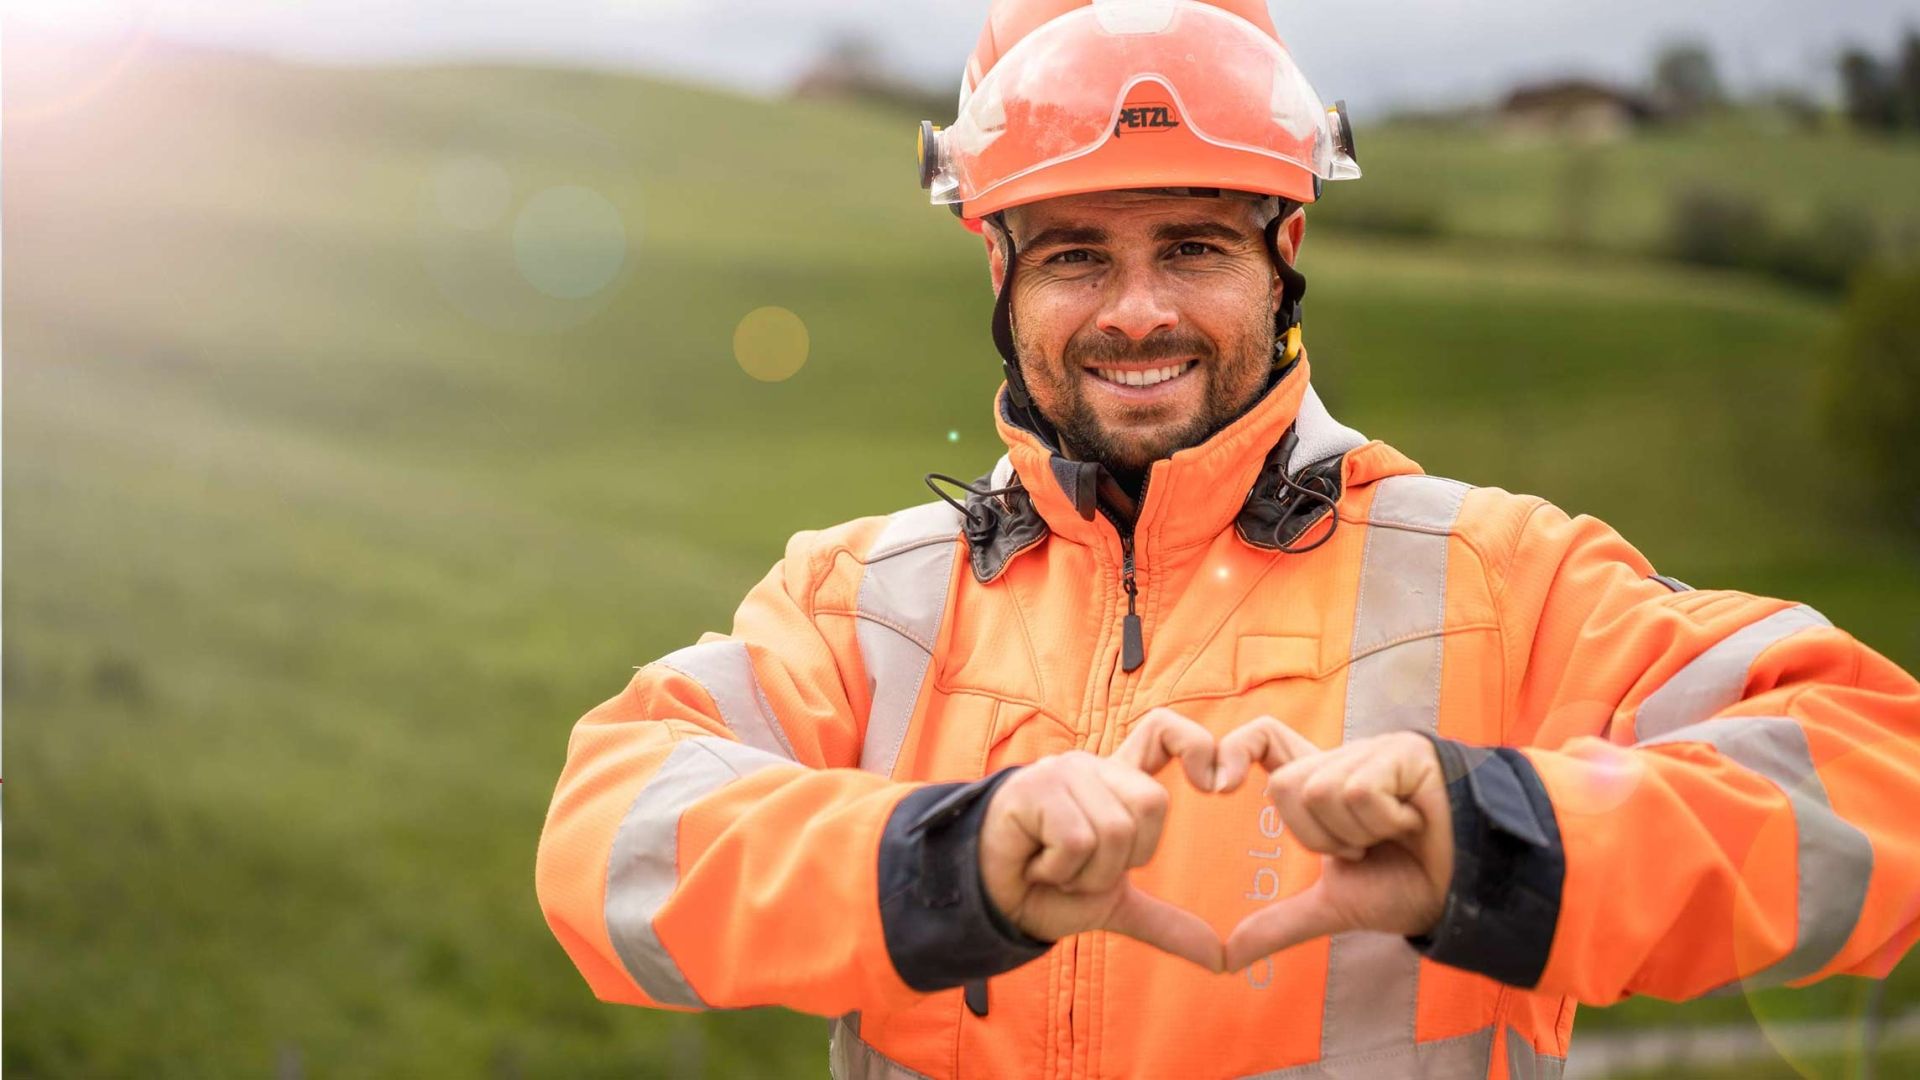 Un dipendente cablex si trova in un paesaggio verde e forma un cuore con le mani.